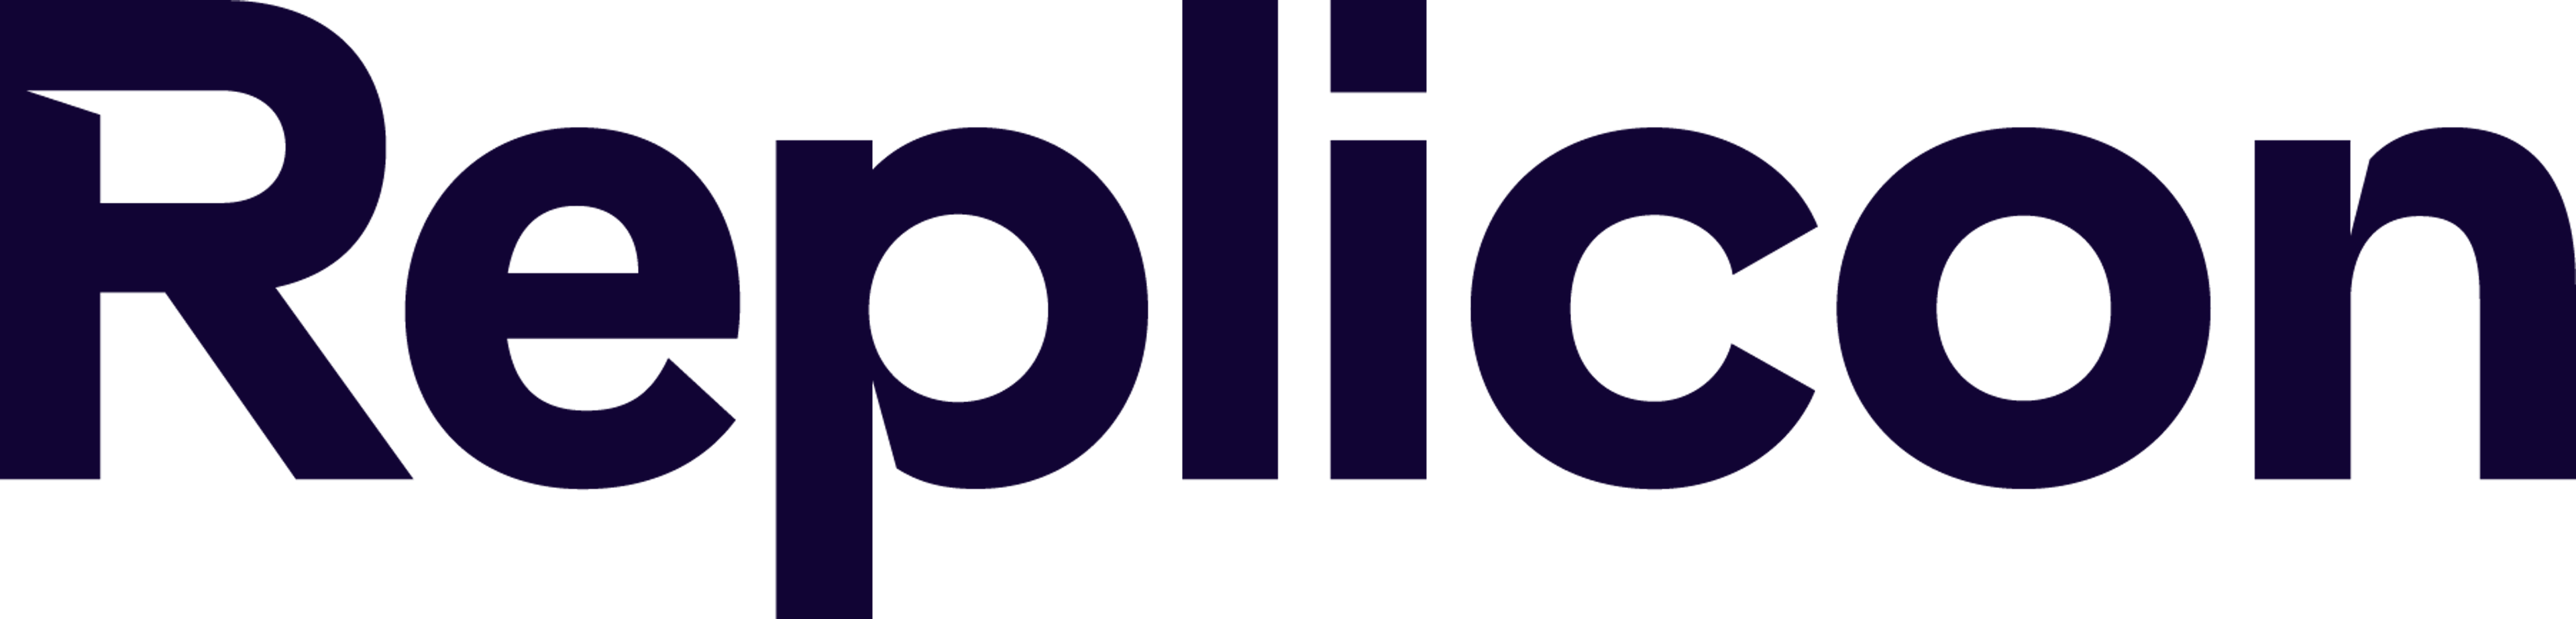 Replicon Logo